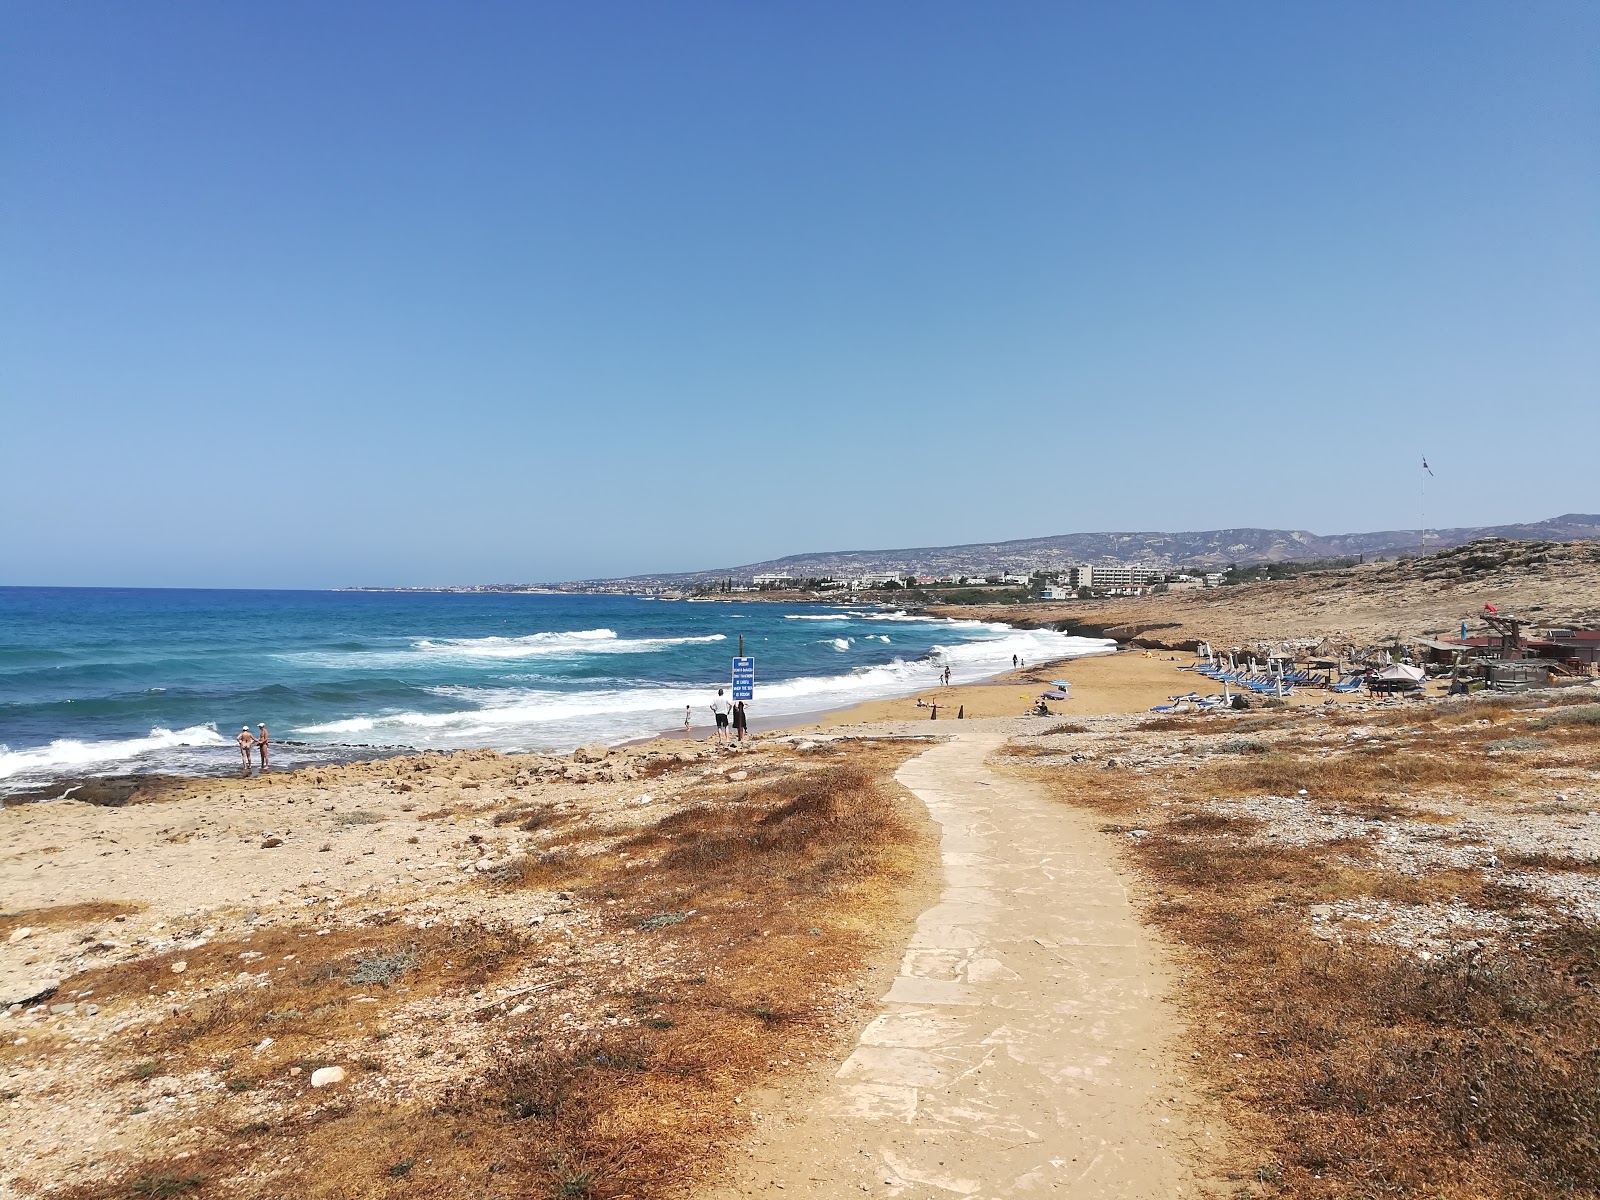 Photo de Kotsias beach - endroit populaire parmi les connaisseurs de la détente